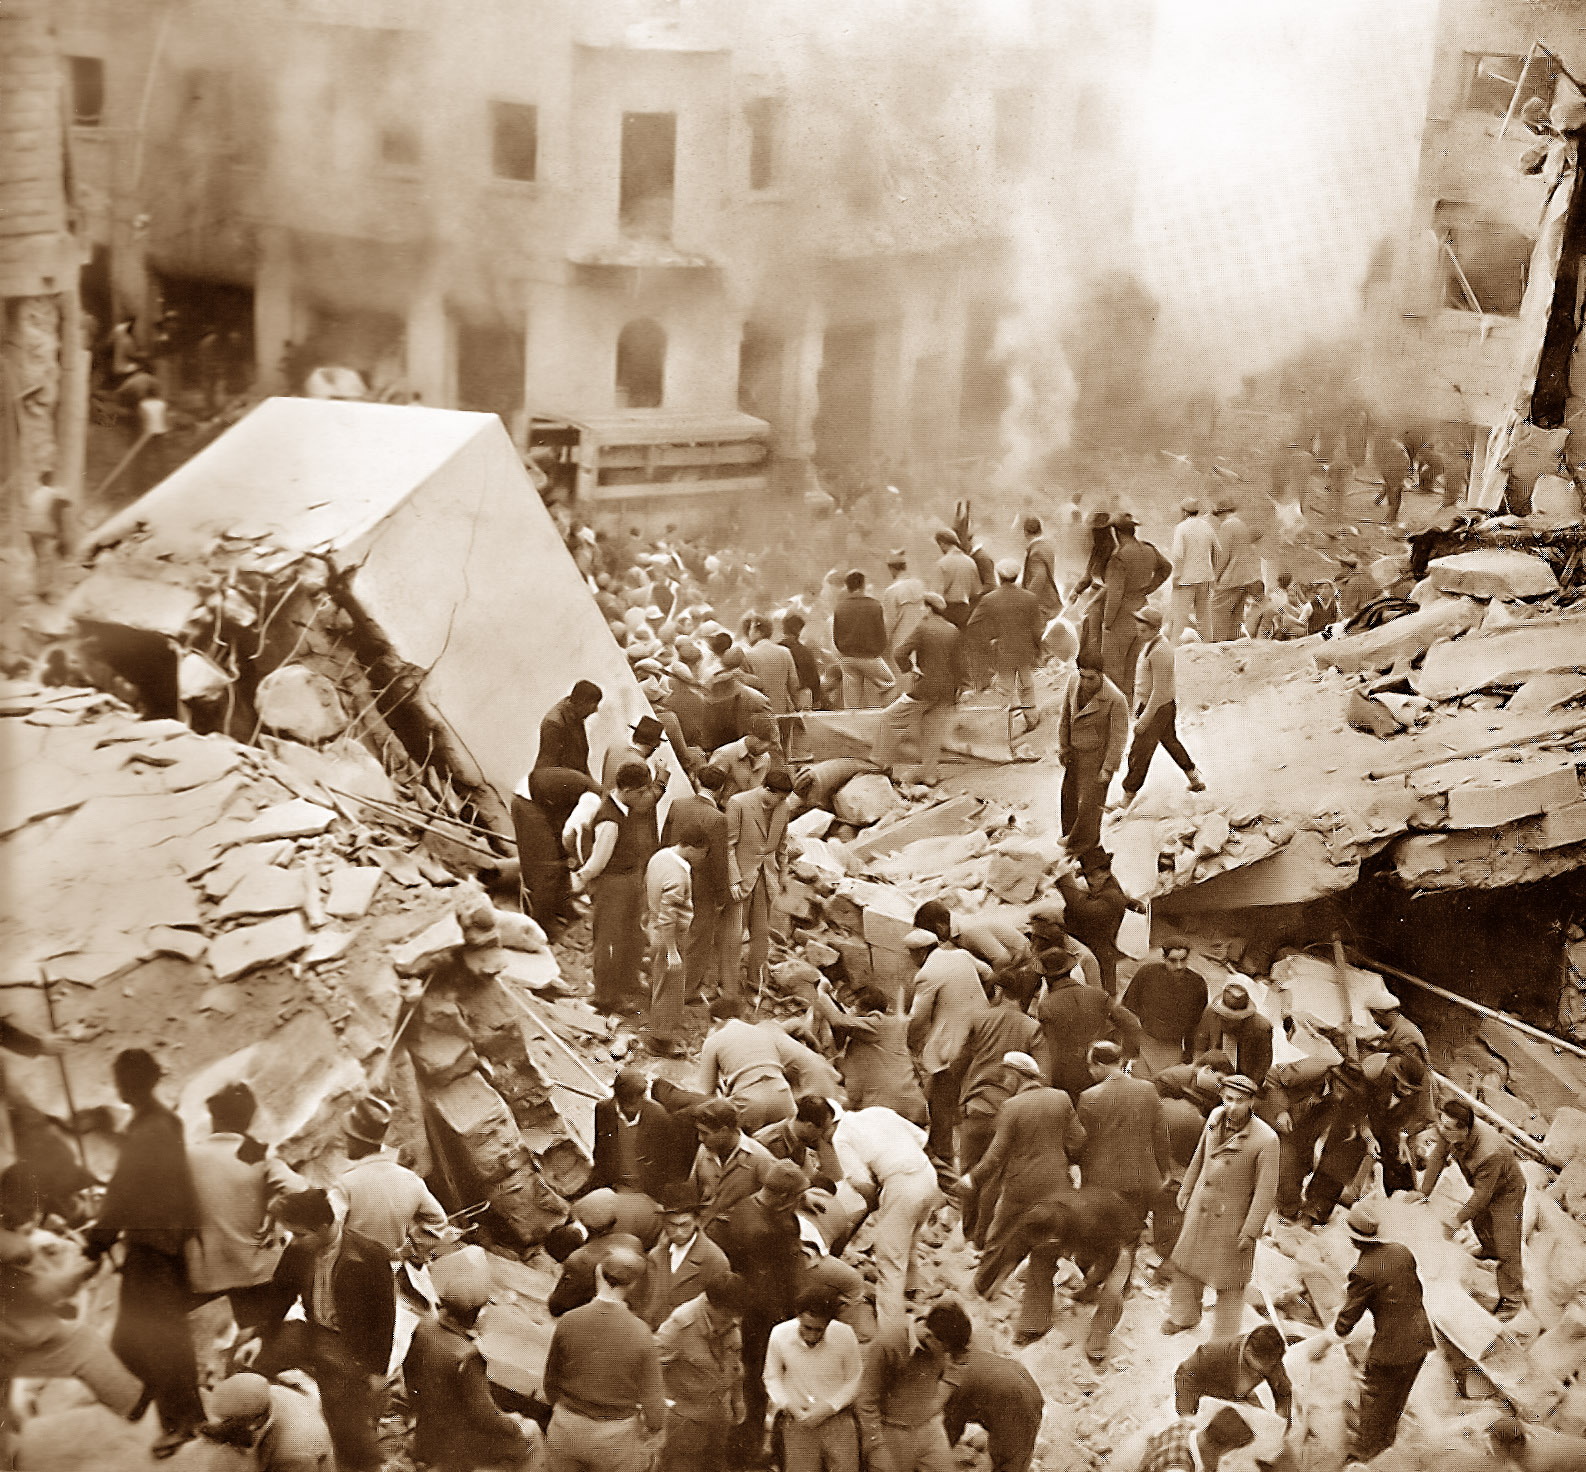 השבוע לפני 70 שנה: פיגוע ברח' בן יהודה, חומות של תקווה נוסח 1948 ונשף גרנדיוזי